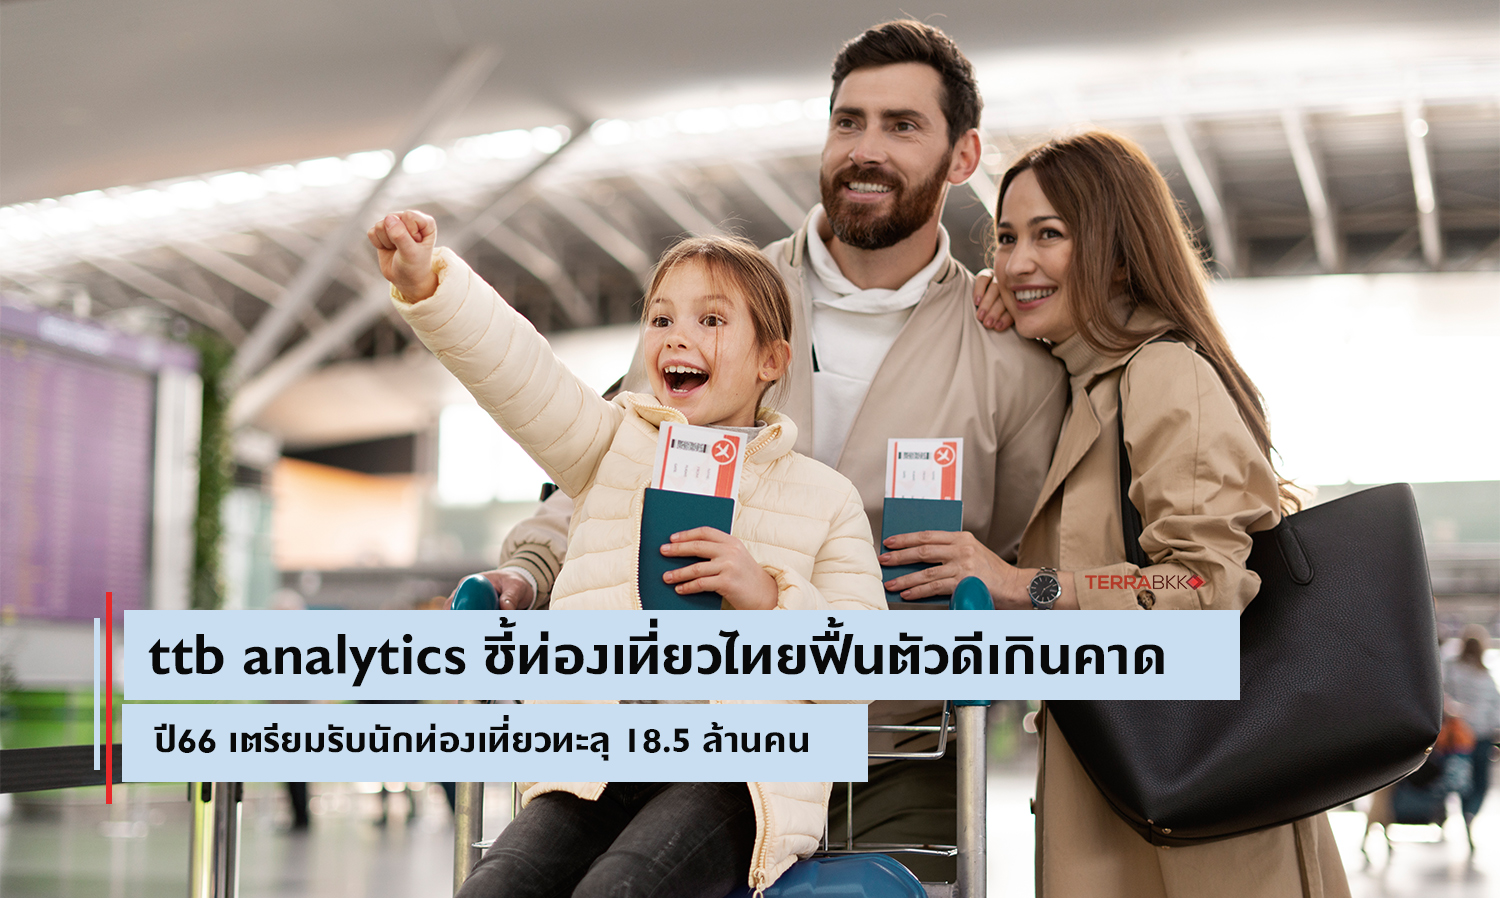 ttb-analytics-ชี้ท่องเที่ยวไทยฟื้นตัวดีเกิ